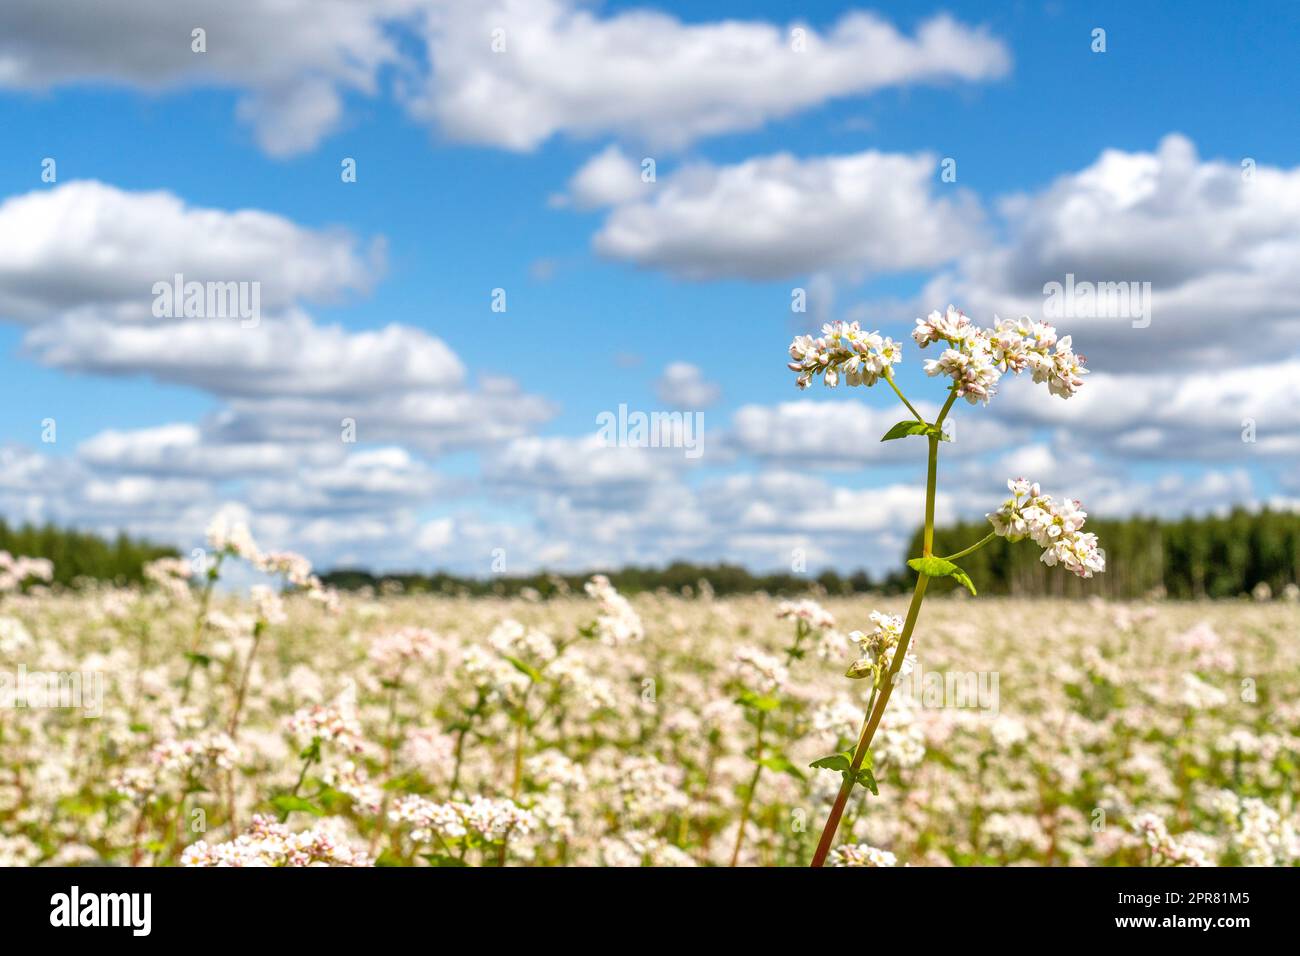 Vue sur un champ de sarrasin fleuri avec des fleurs blanches Banque D'Images